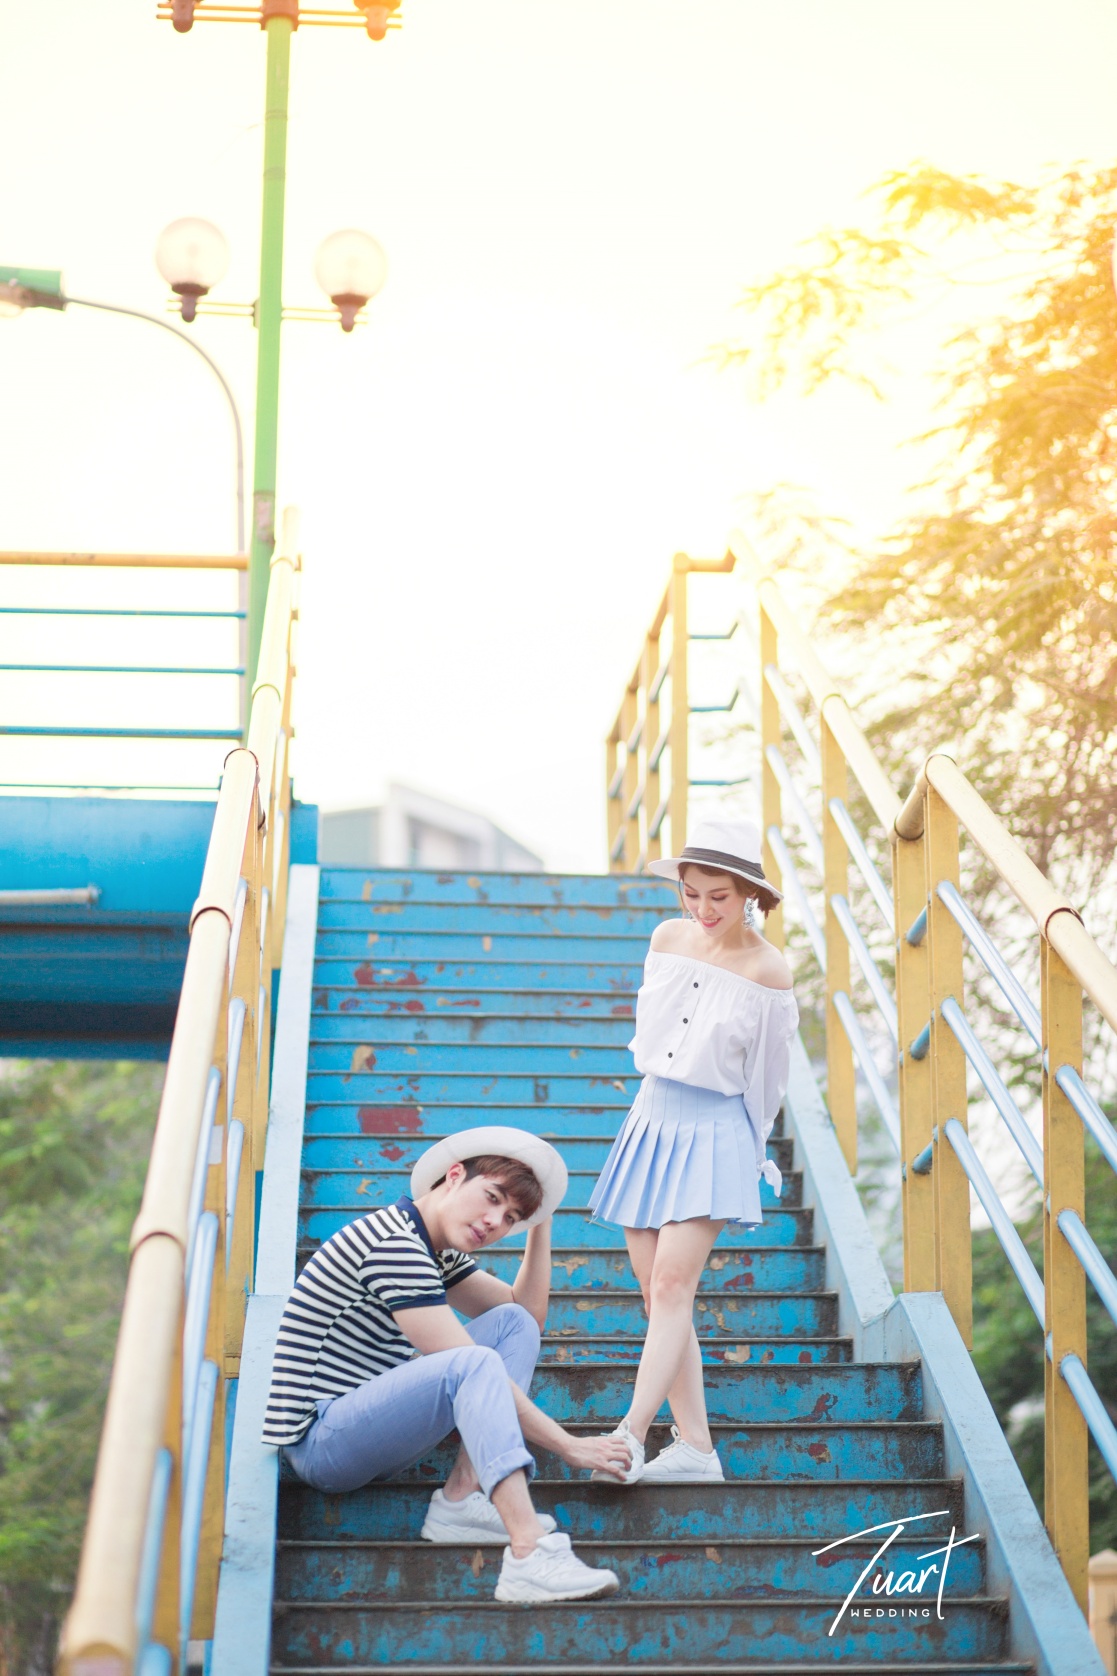 Album chụp ảnh cưới đẹp concept Hàn Quốc 25